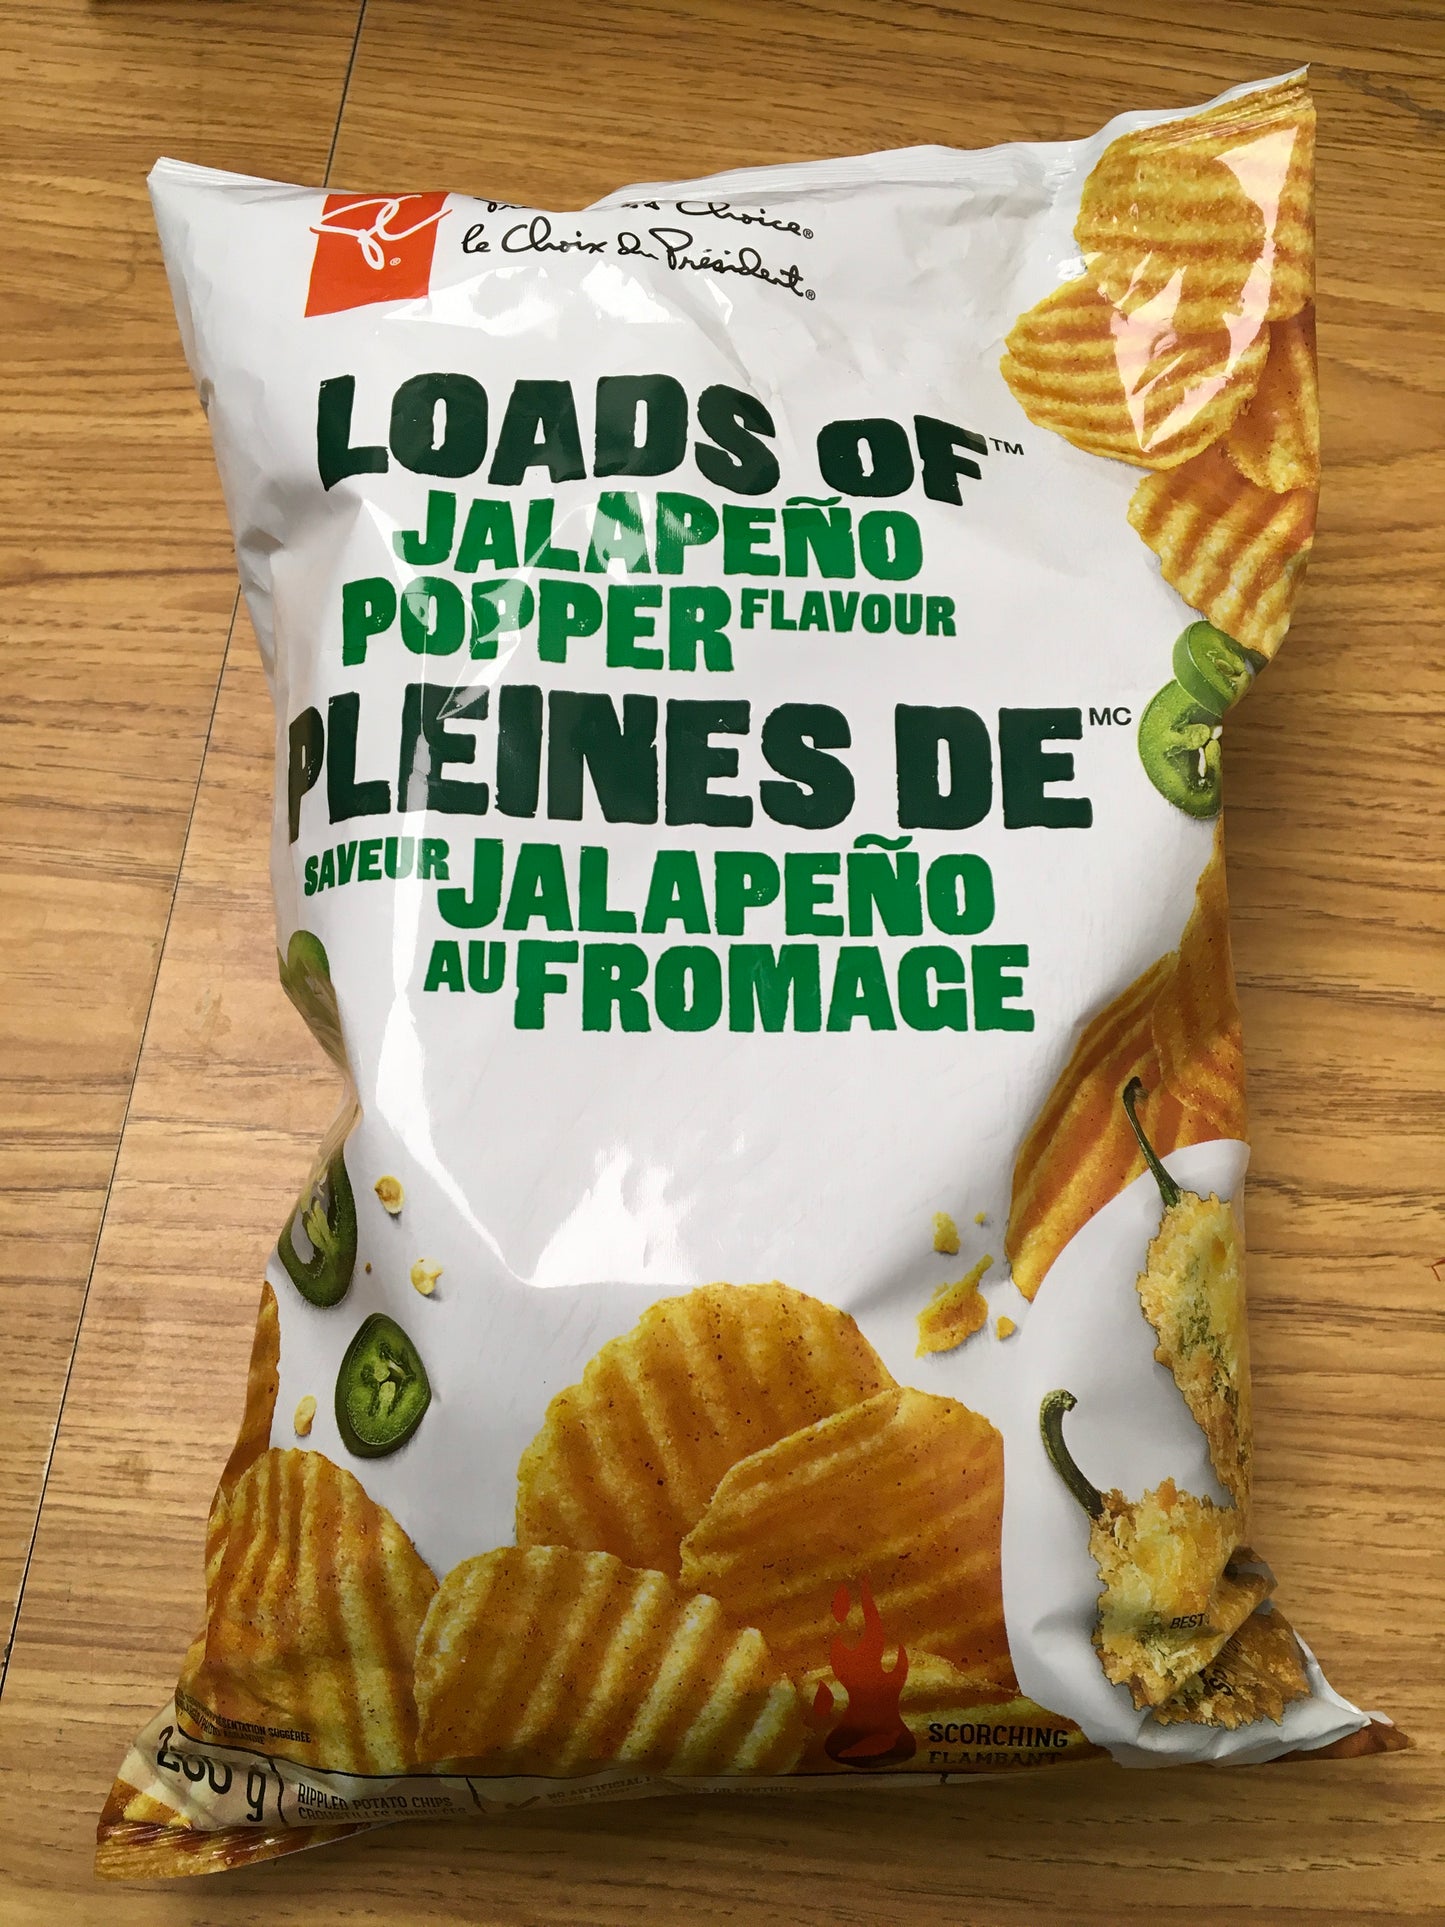 Potato Chips - Variety